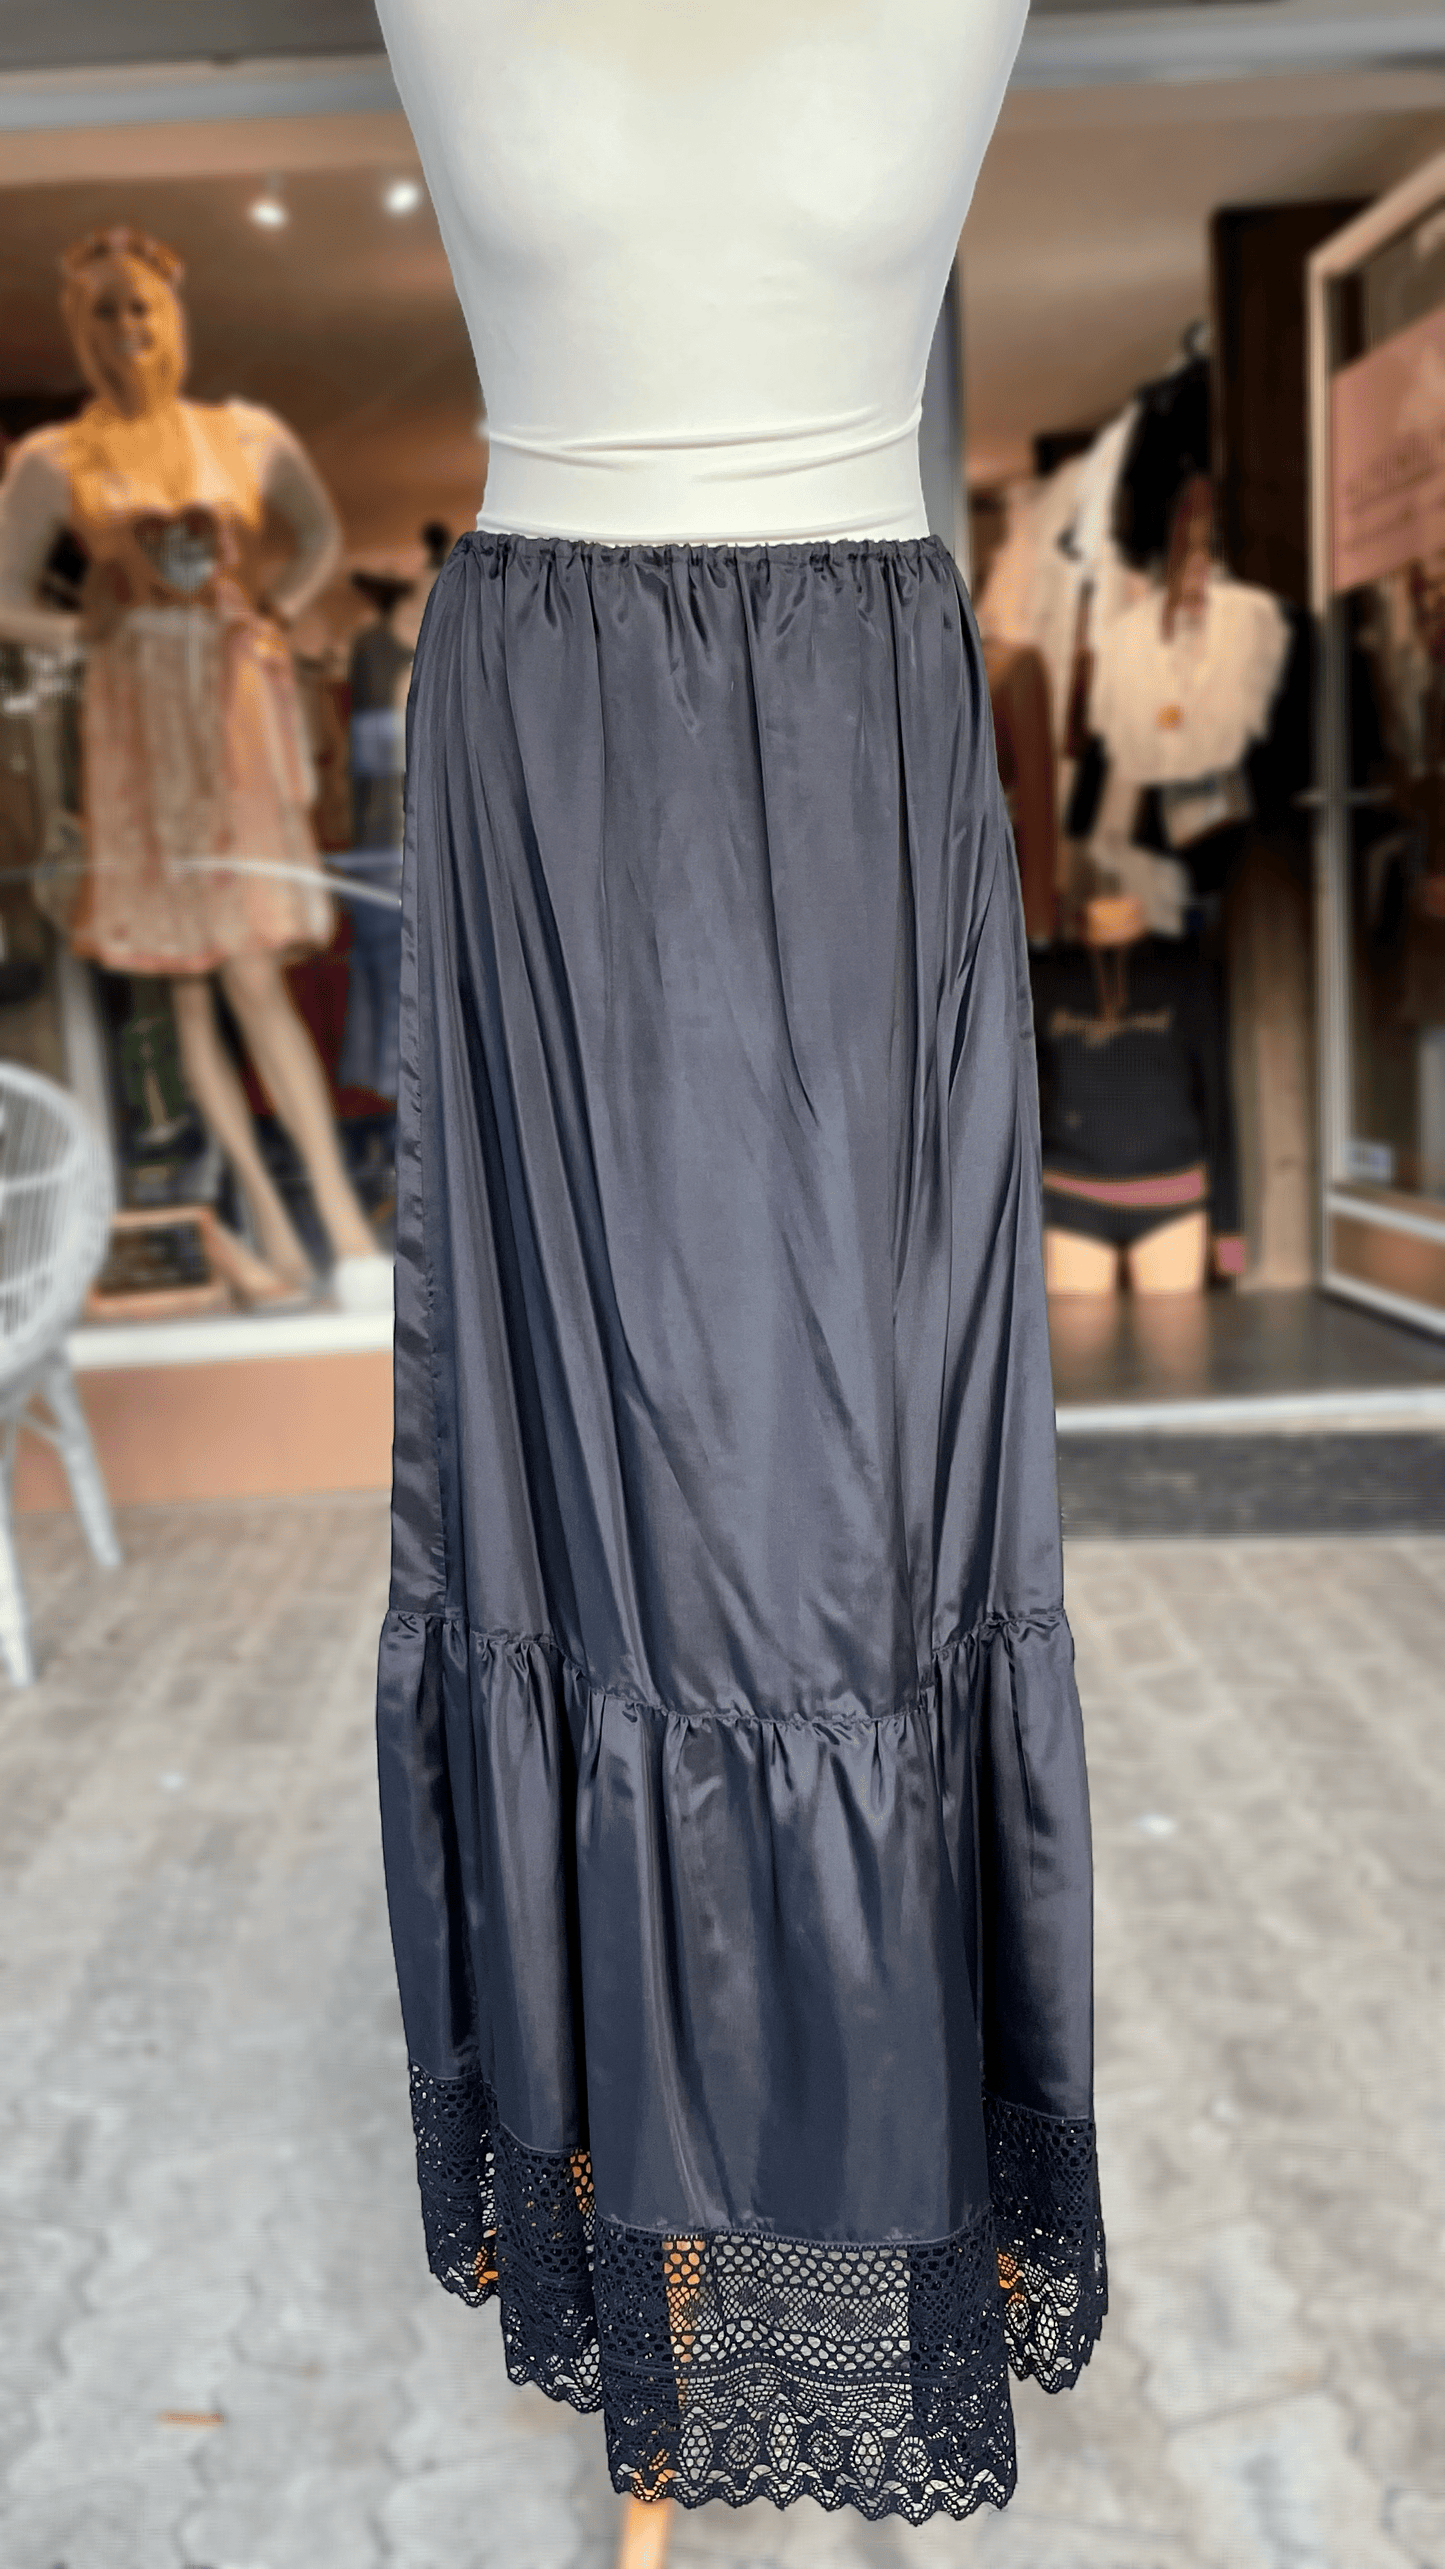 Petticoat, Unterrock Edna 95 cm, schwarz, Spitze Unterrock Sportalm 